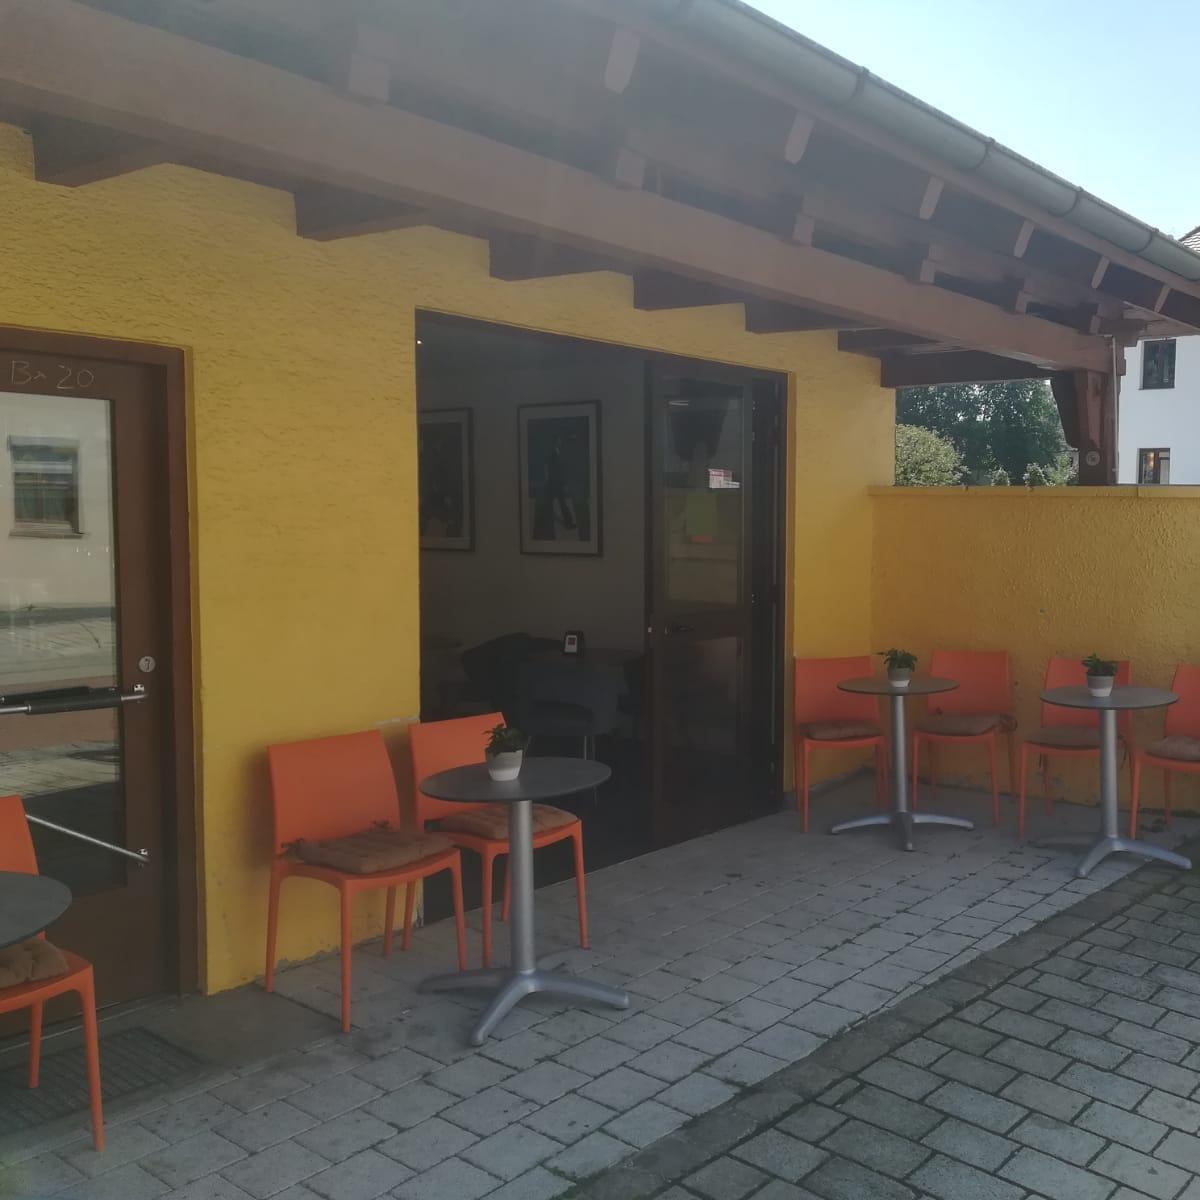 Restaurant "Eisdiele Gelatino" in Pöcking